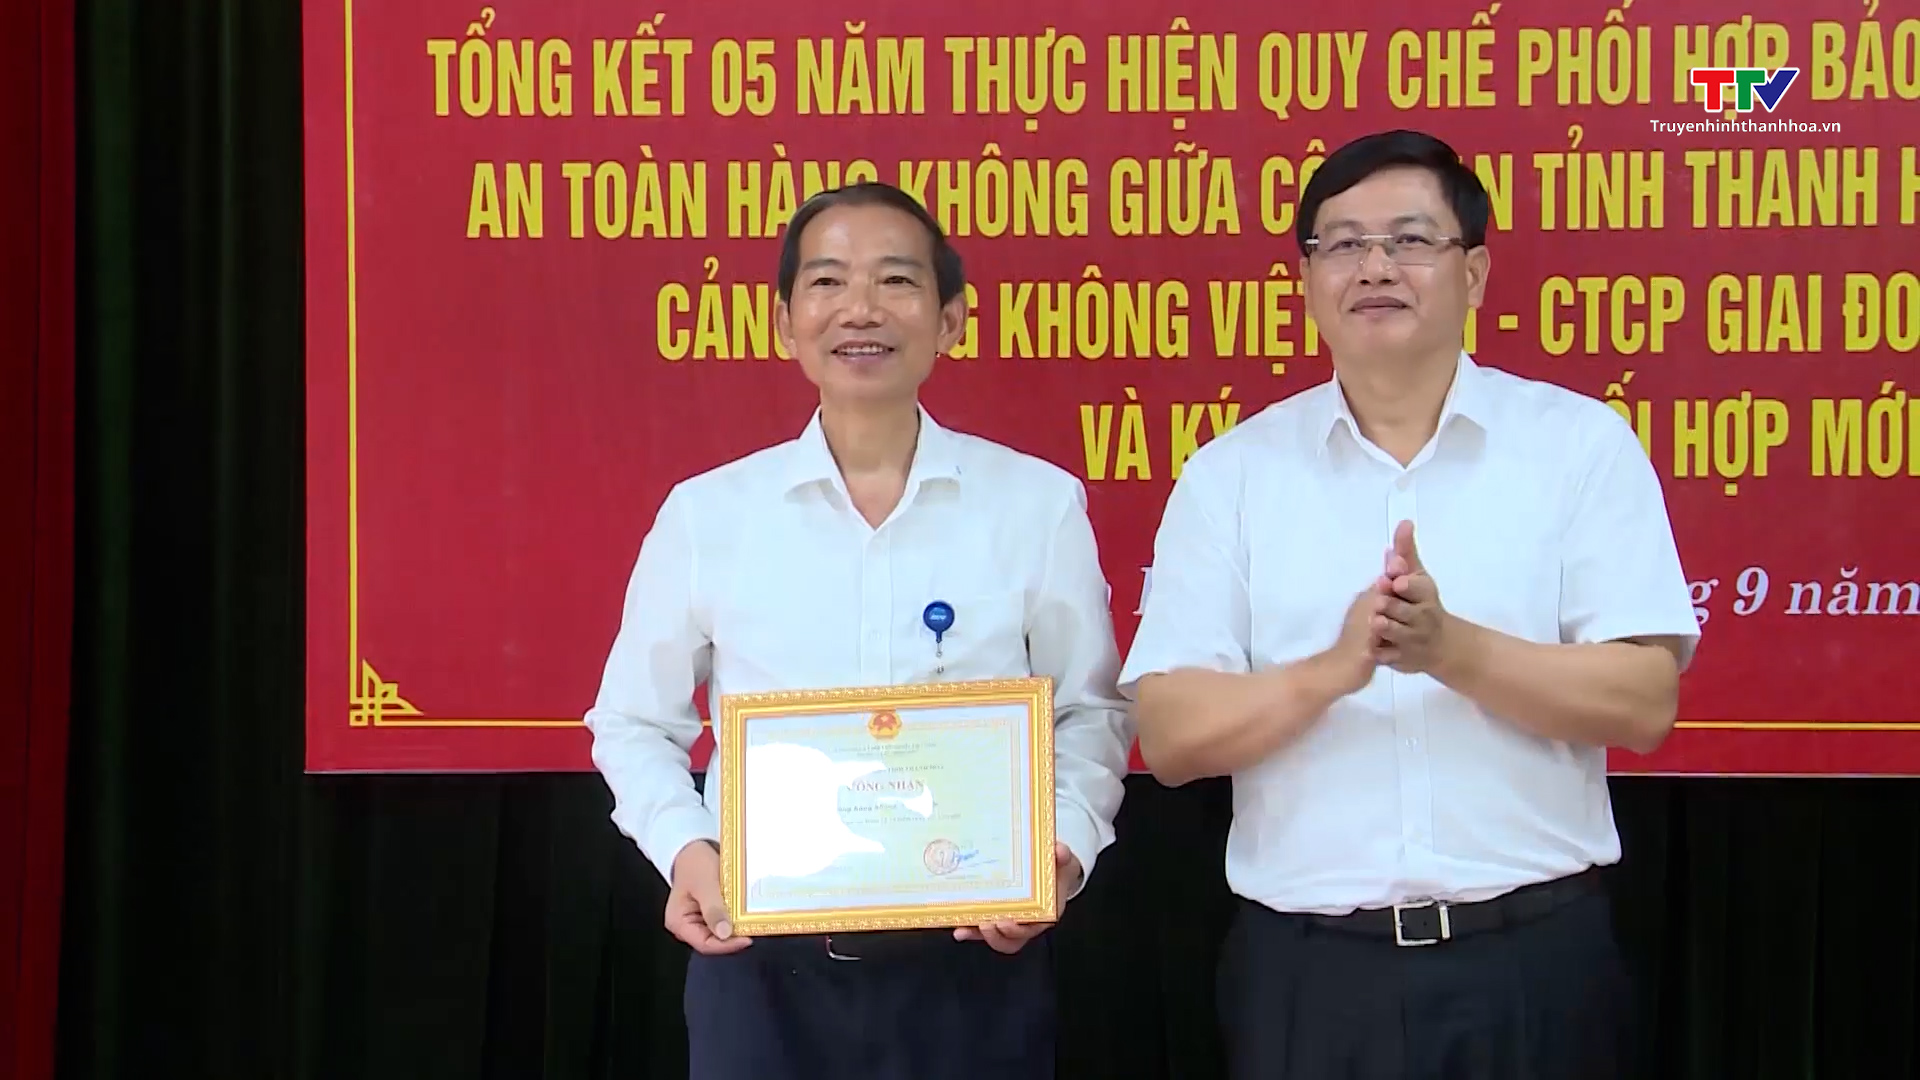 Tổng kết 5 năm thực hiện Quy chế phối hợp giữa Công an tỉnh Thanh Hóa với Tổng Công ty Cảng hàng không Việt Nam - CTCP - Ảnh 5.